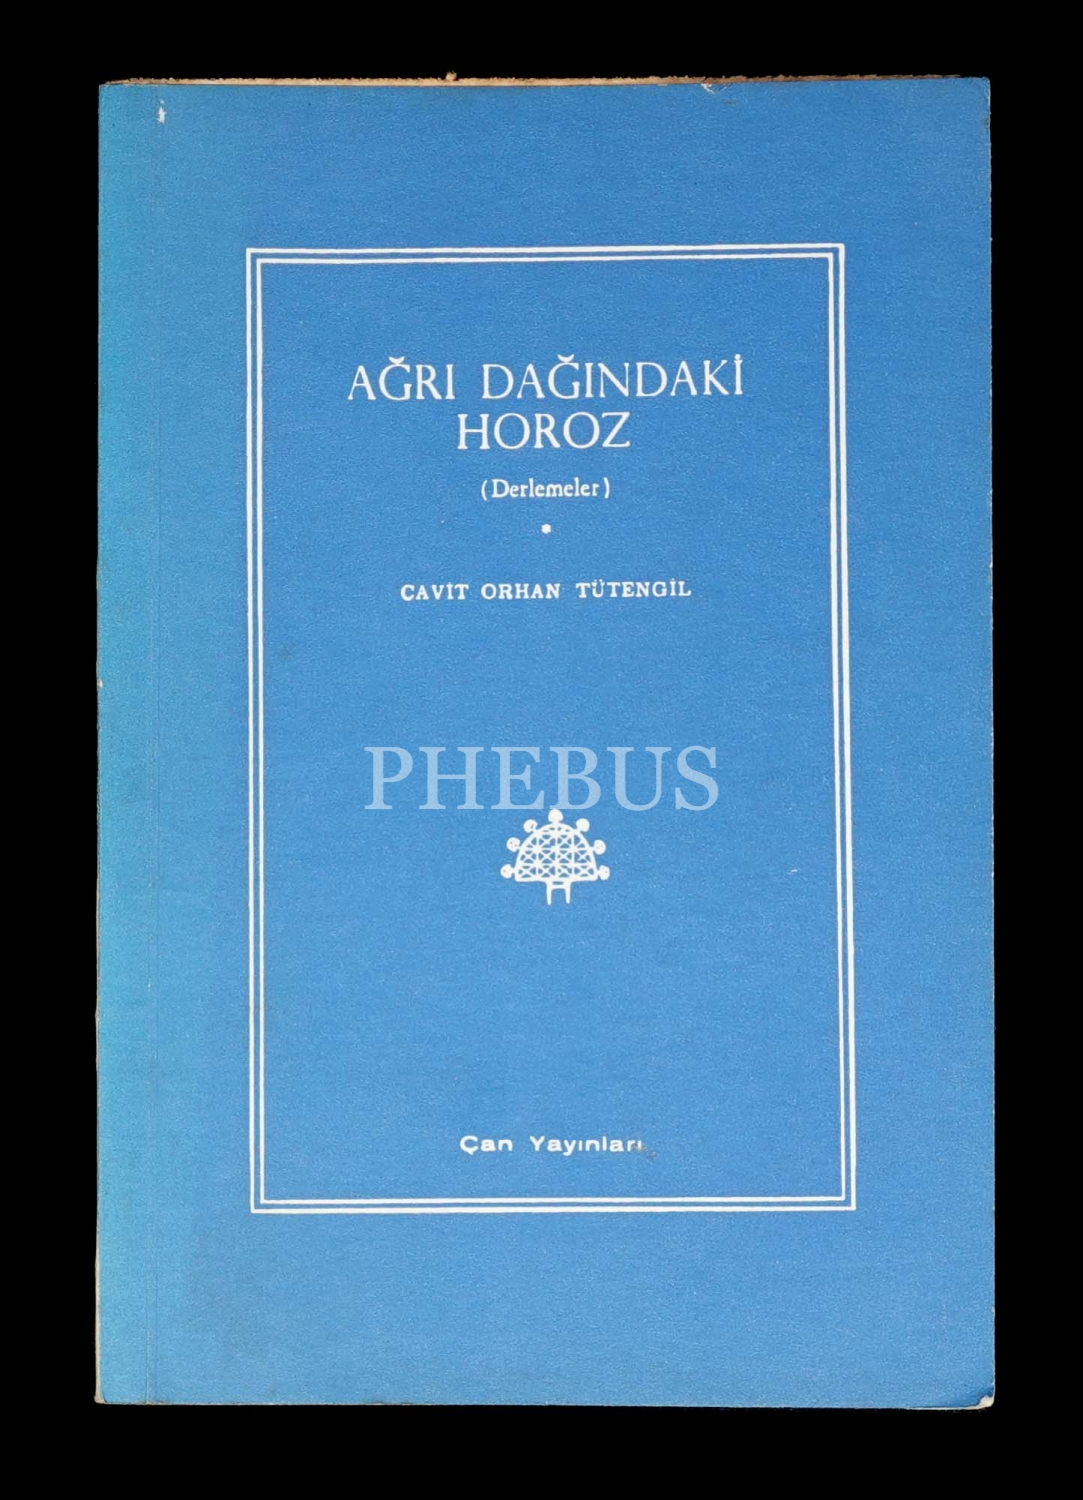 AĞRI DAĞINDAKİ HOROZ, Cavit Orhan Tütengil, Çan Yayınları, 1968, 156 sayfa, 14x20 cm...